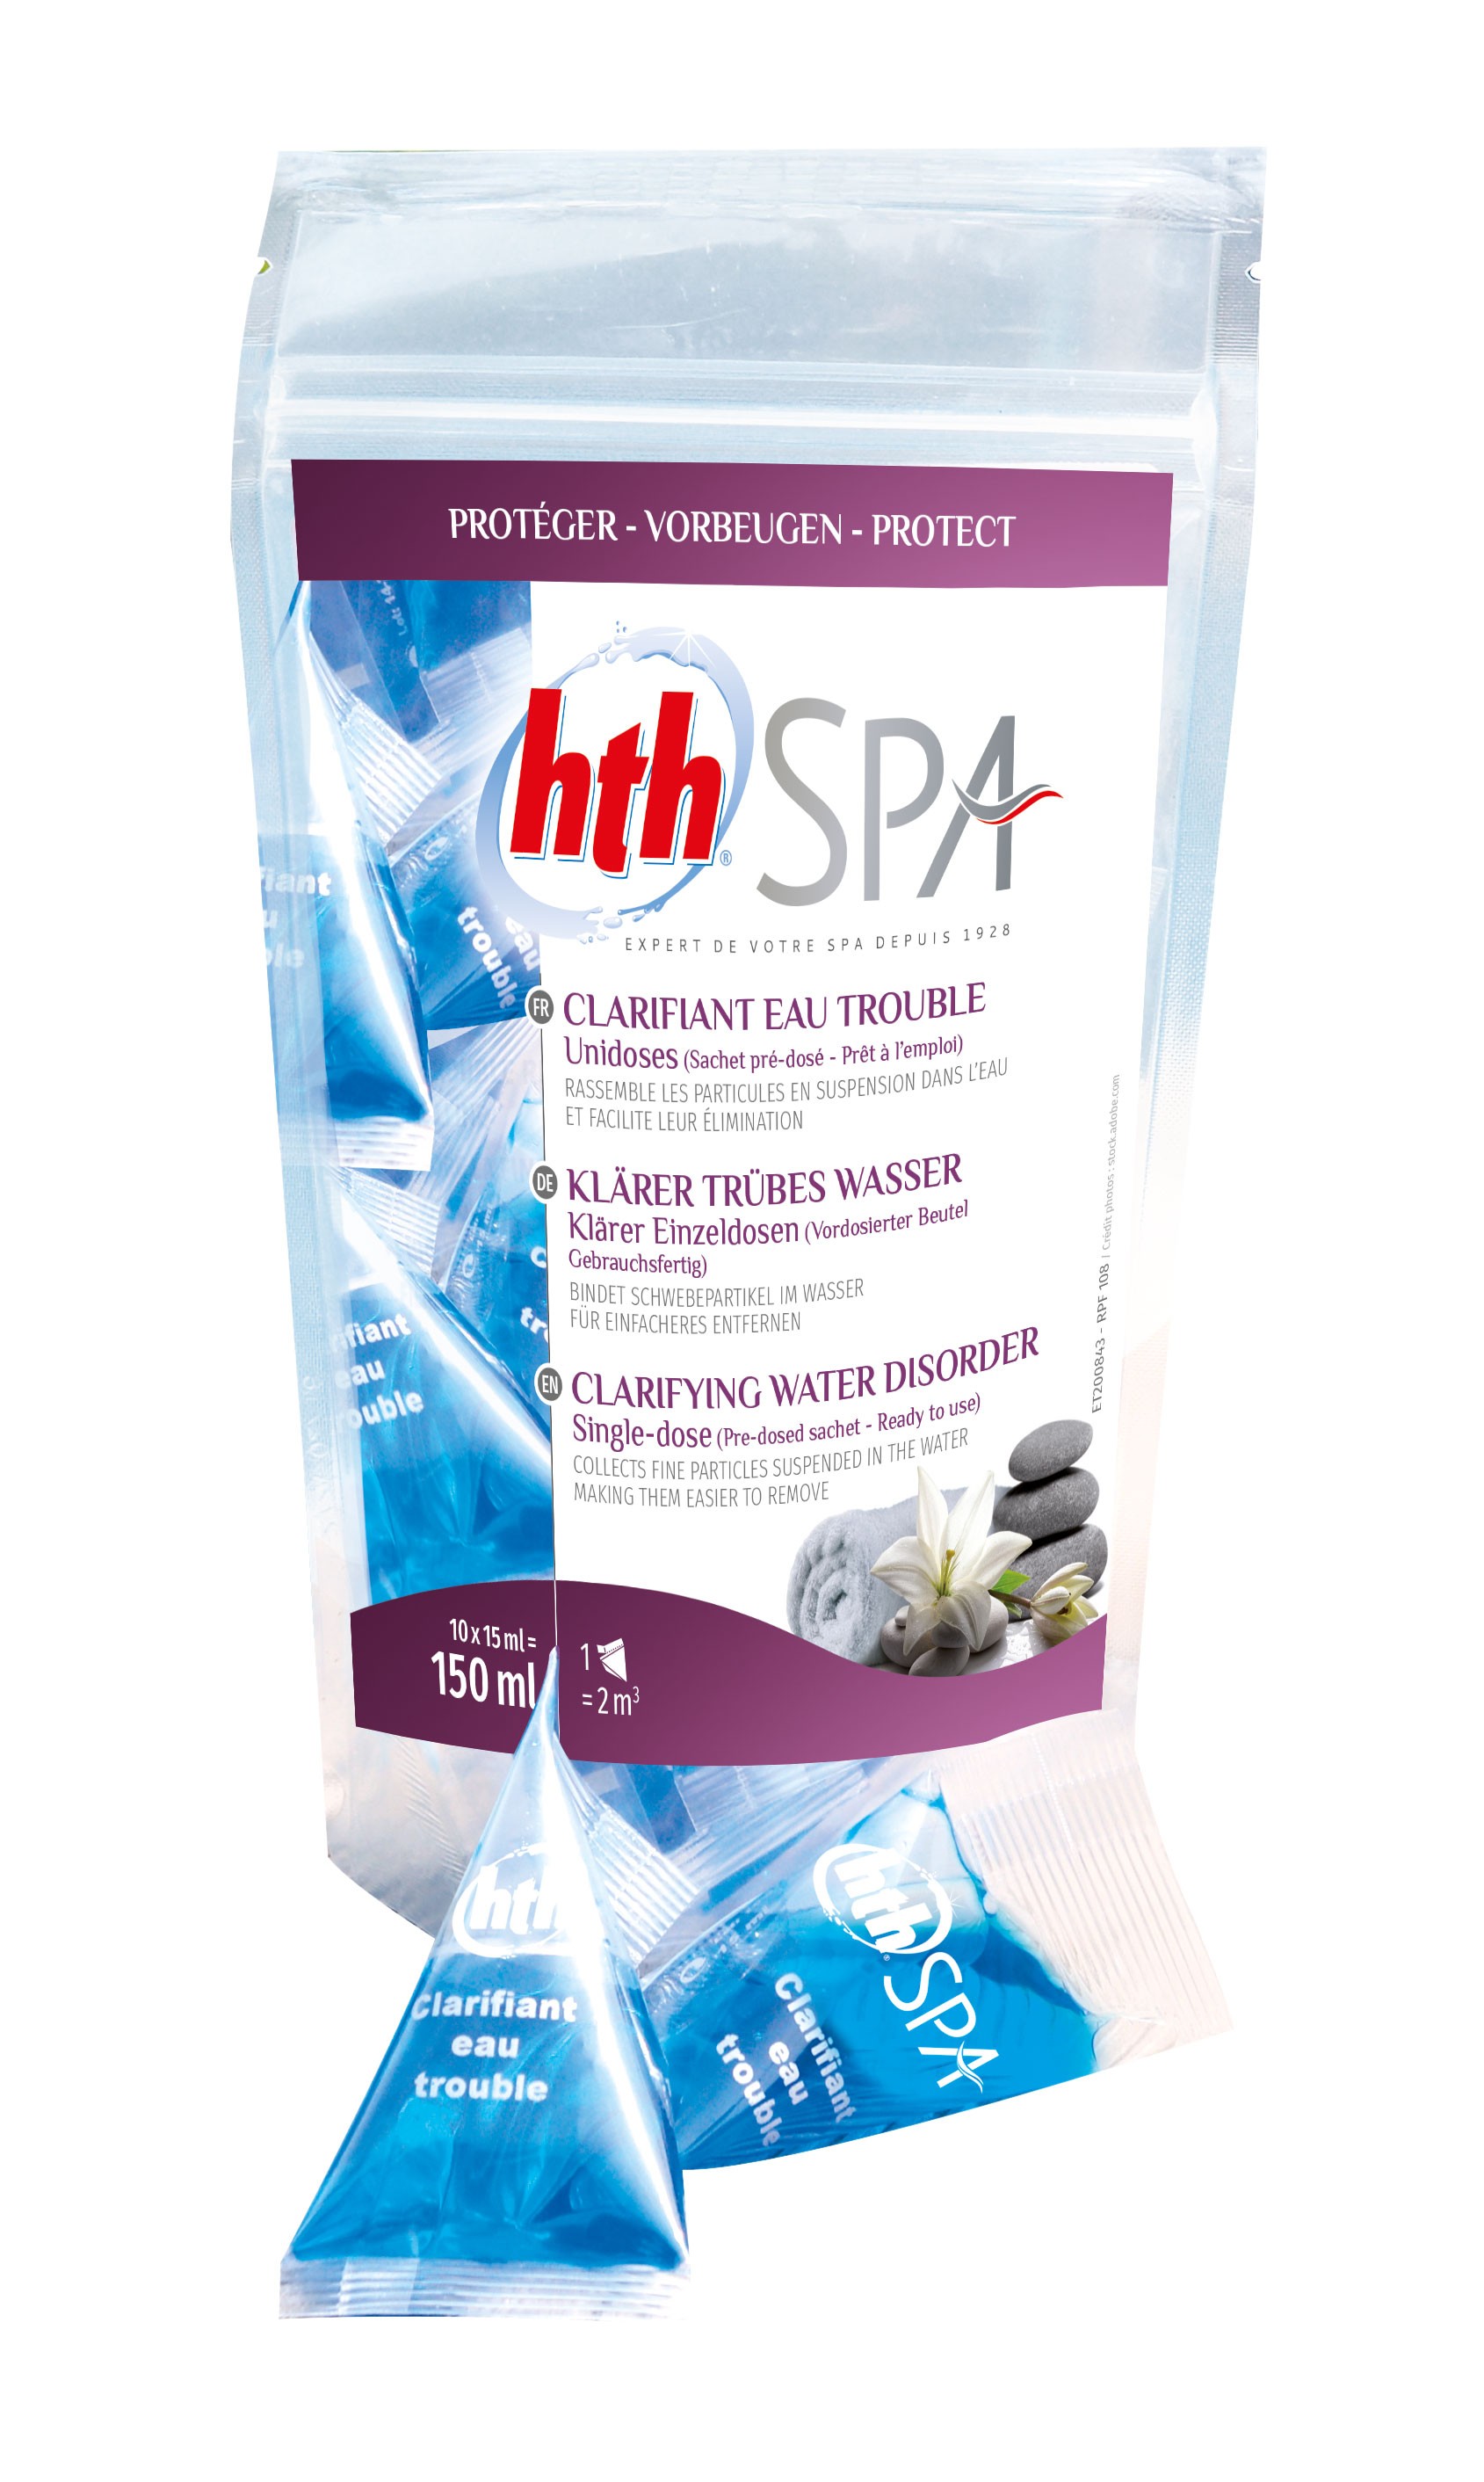 hth Spaclean - Nettoyant liquide pour spas gonflables et canalisations